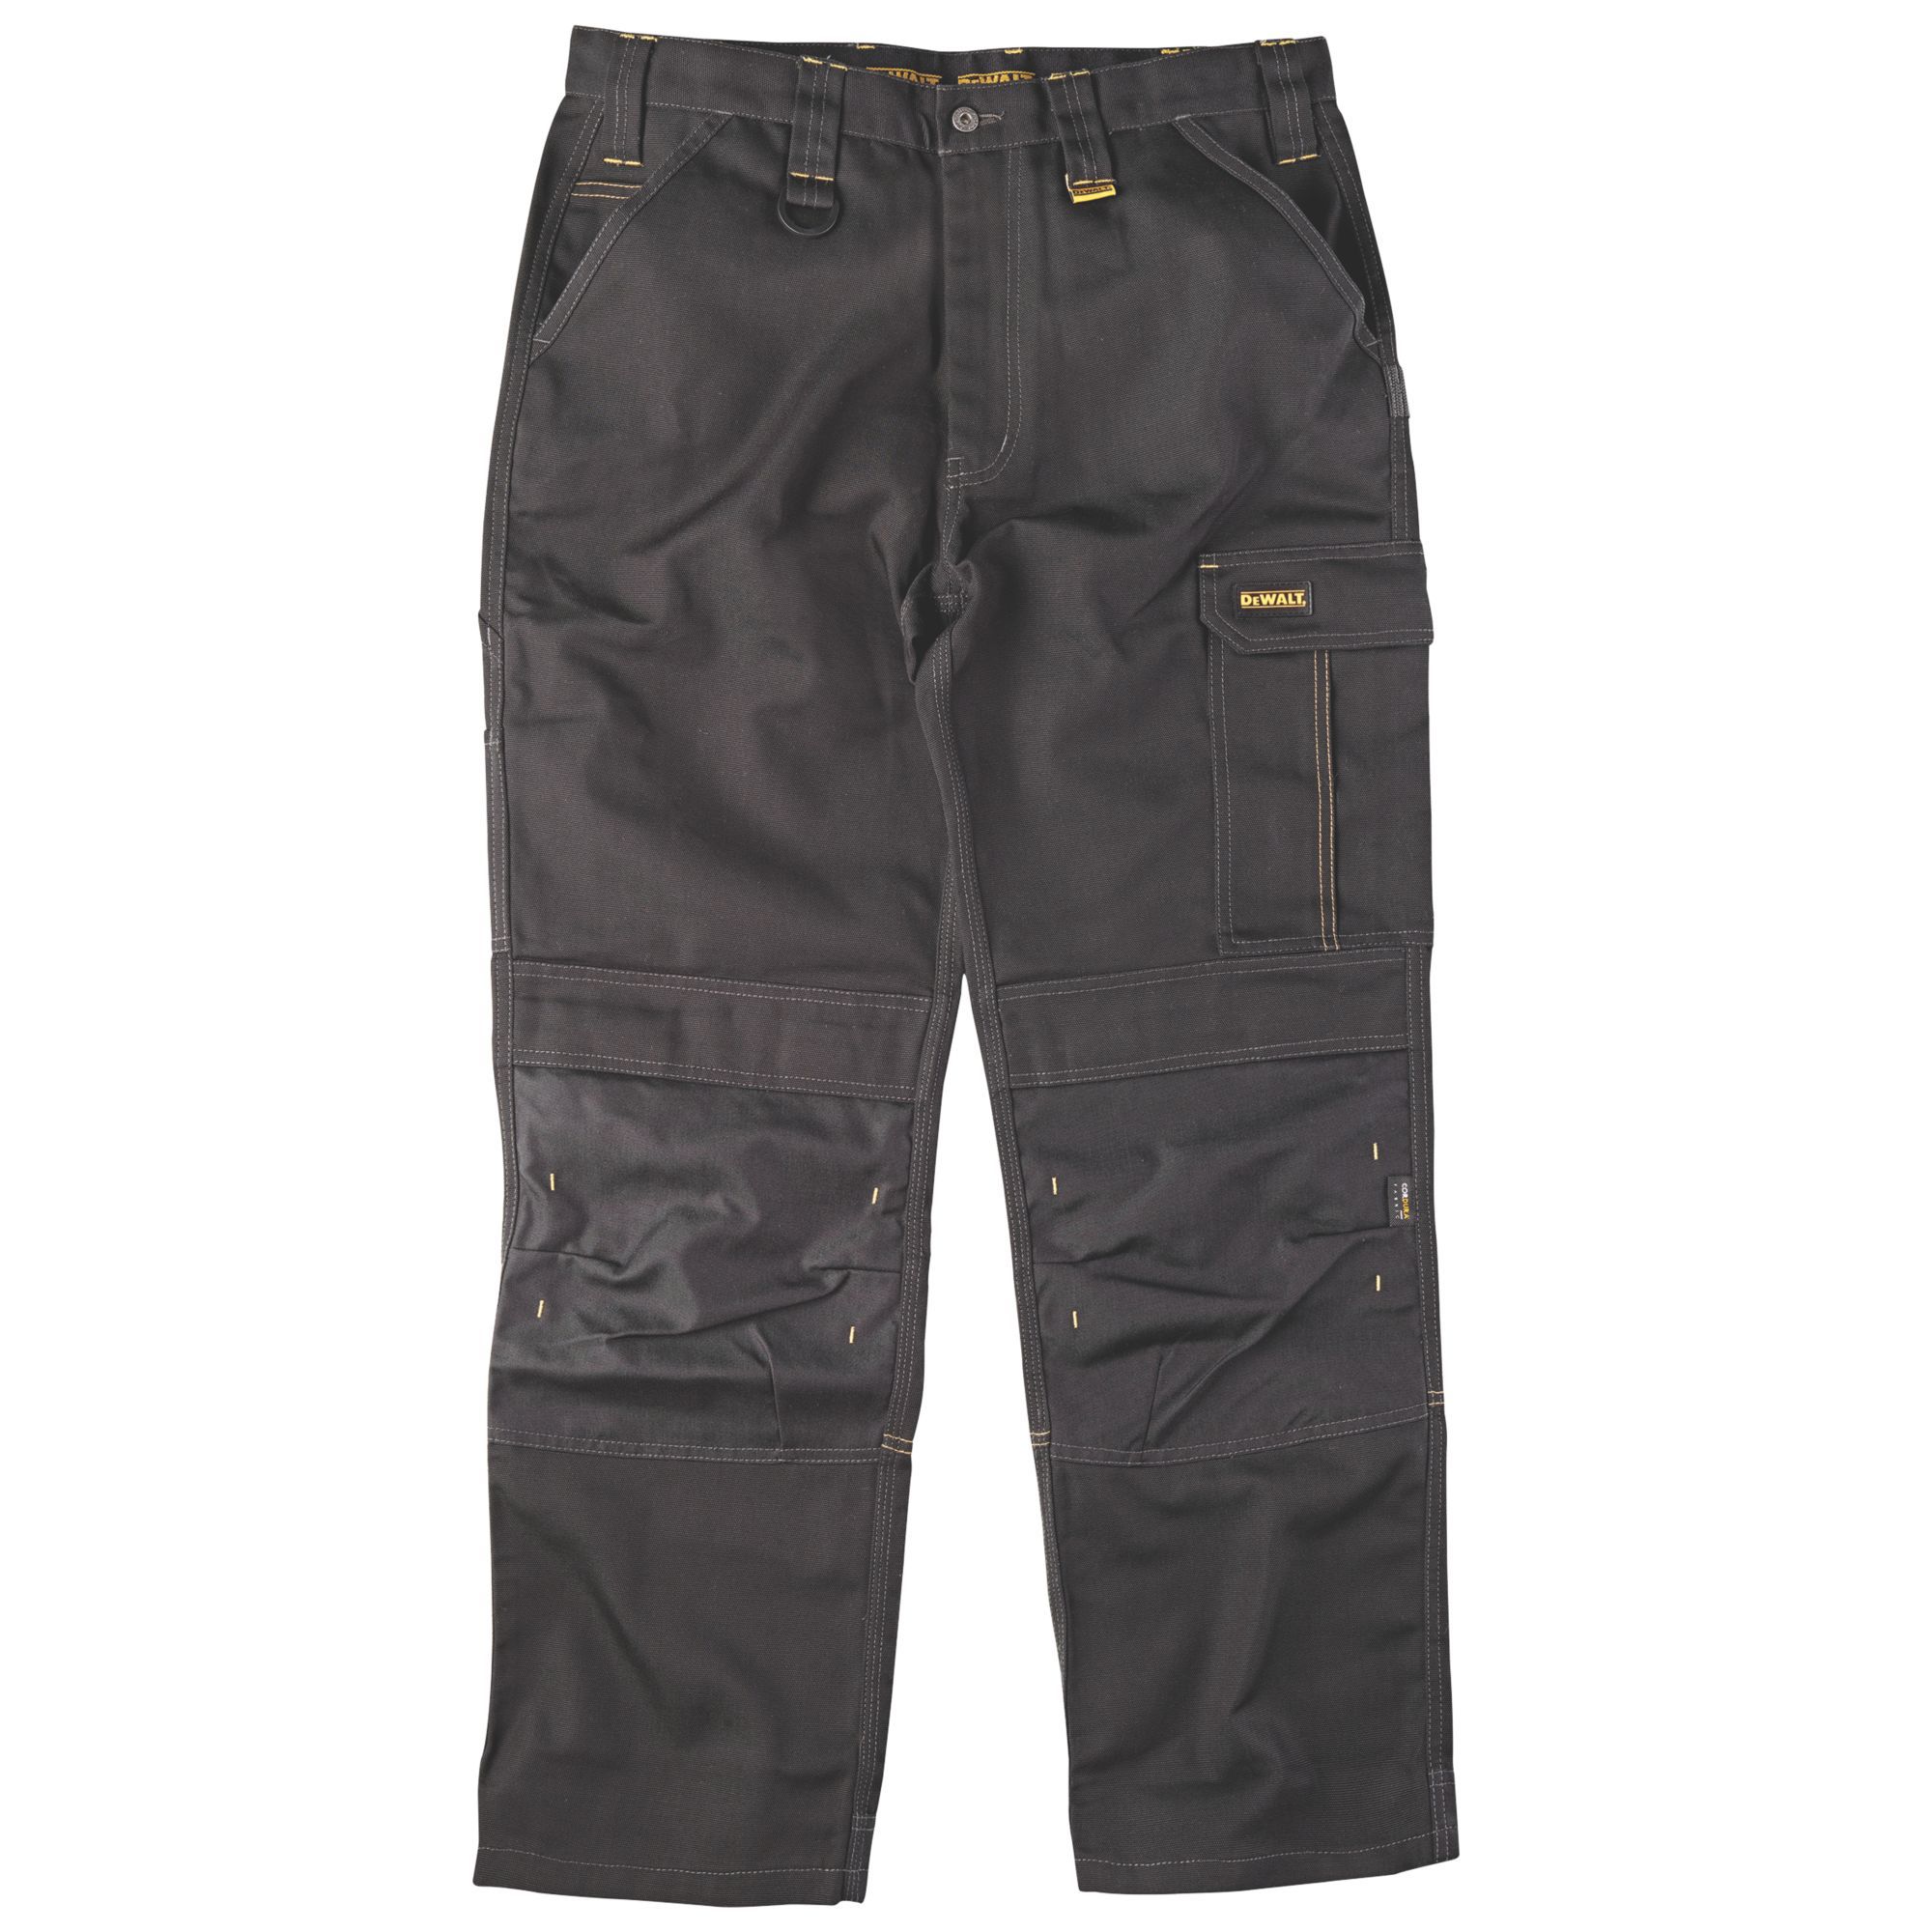 DeWalt Ridgeley Black Trousers, W36